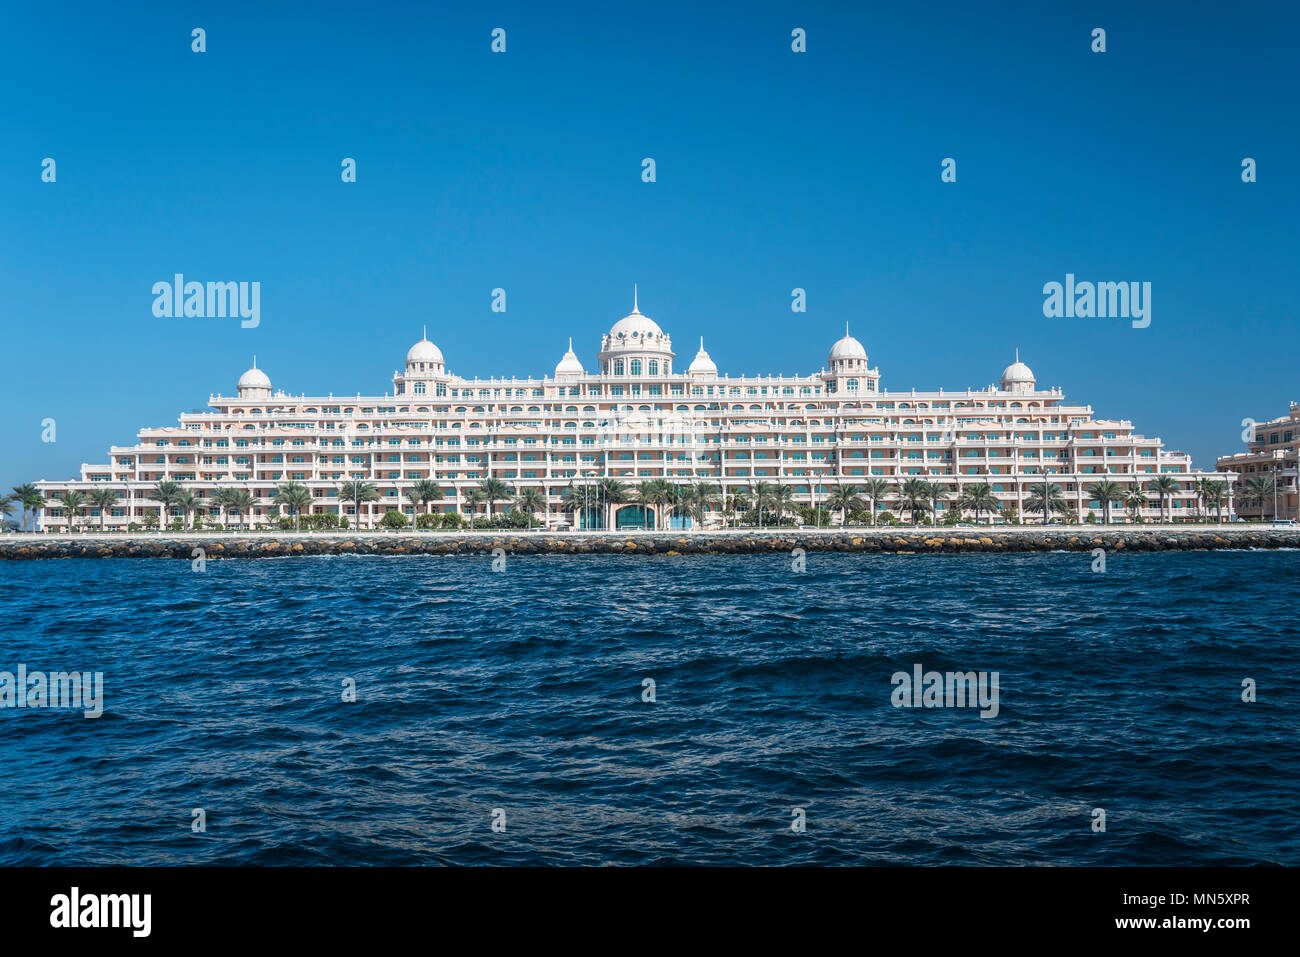 Le Kempinski Hotel and Residences Palm Jumeirah sur les îles au large de la  côte de Dubaï, Émirats arabes unis, au Moyen-Orient Photo Stock - Alamy